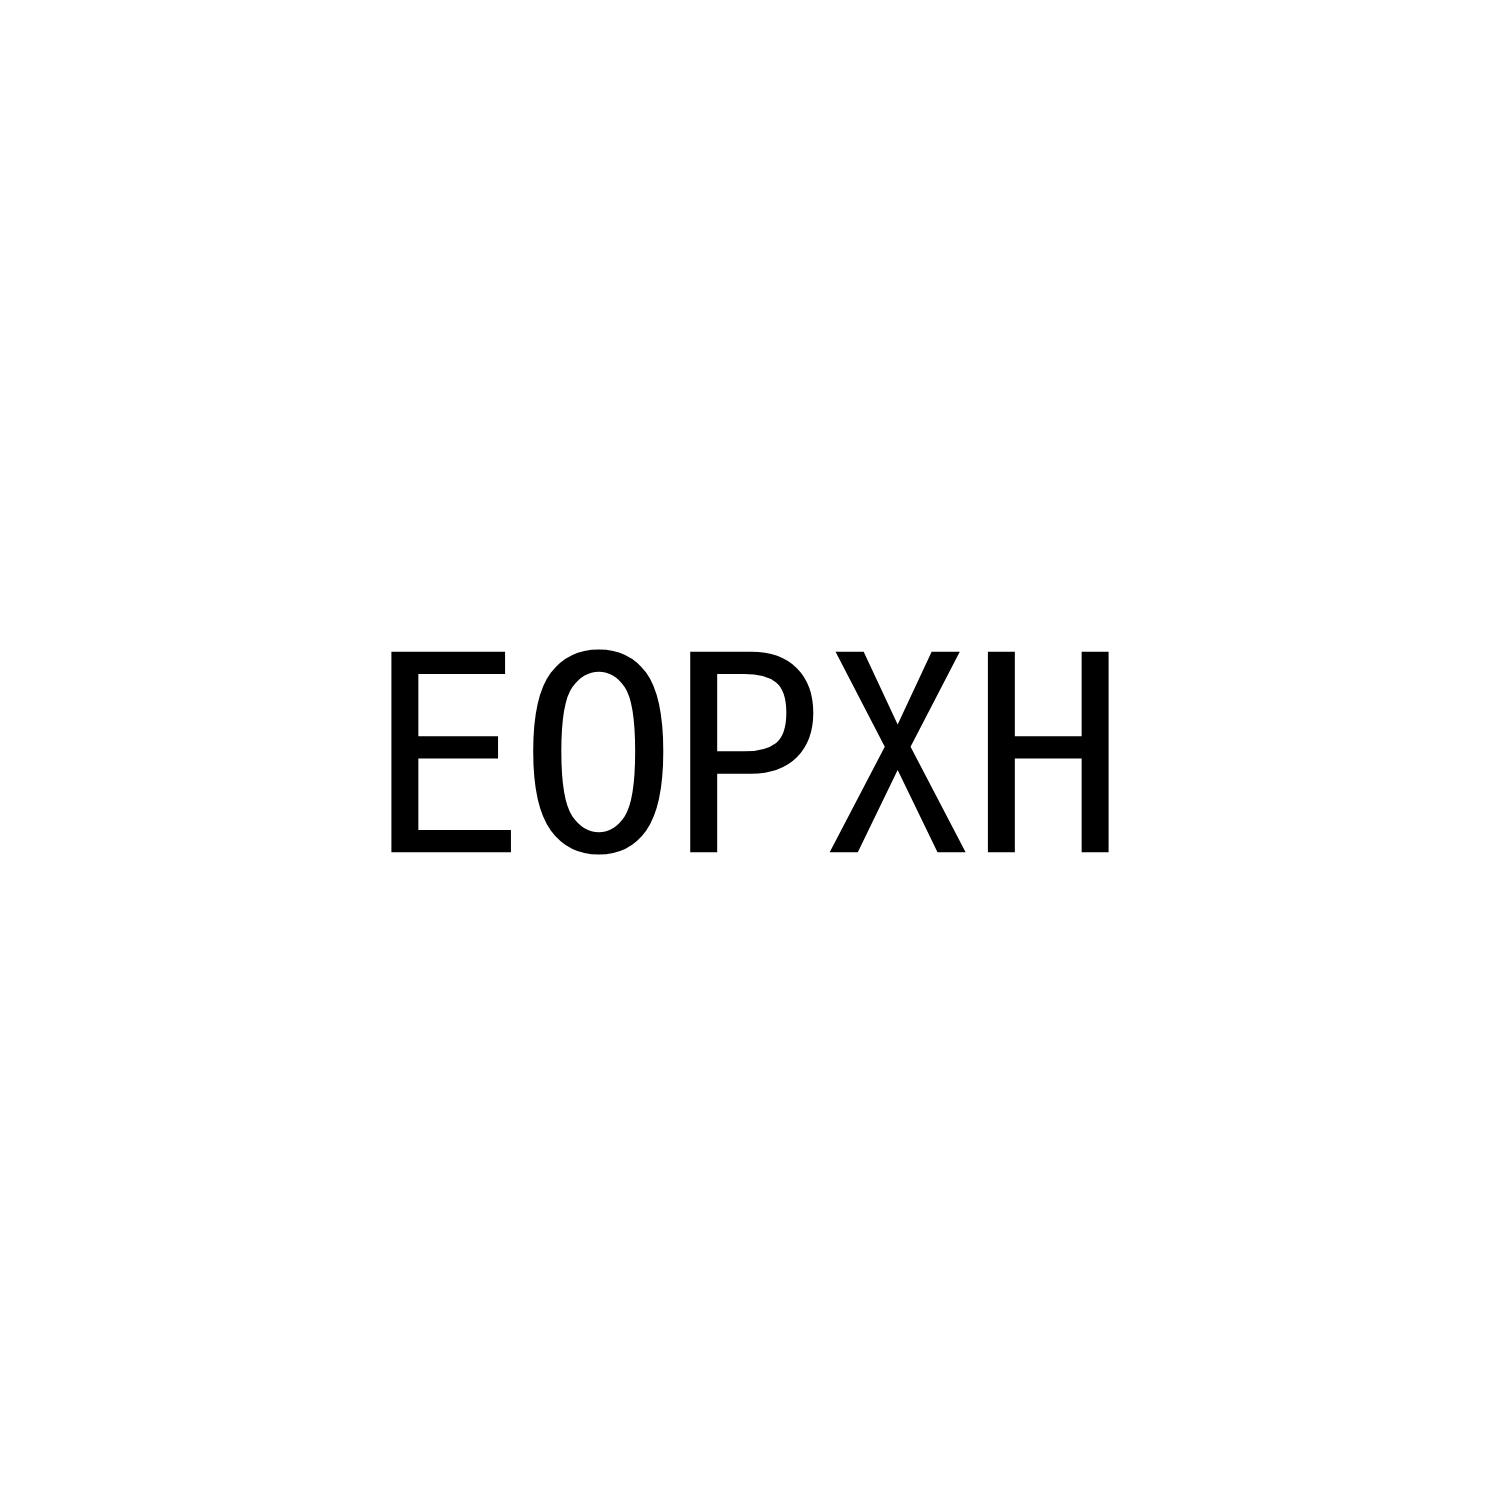 EOPXH